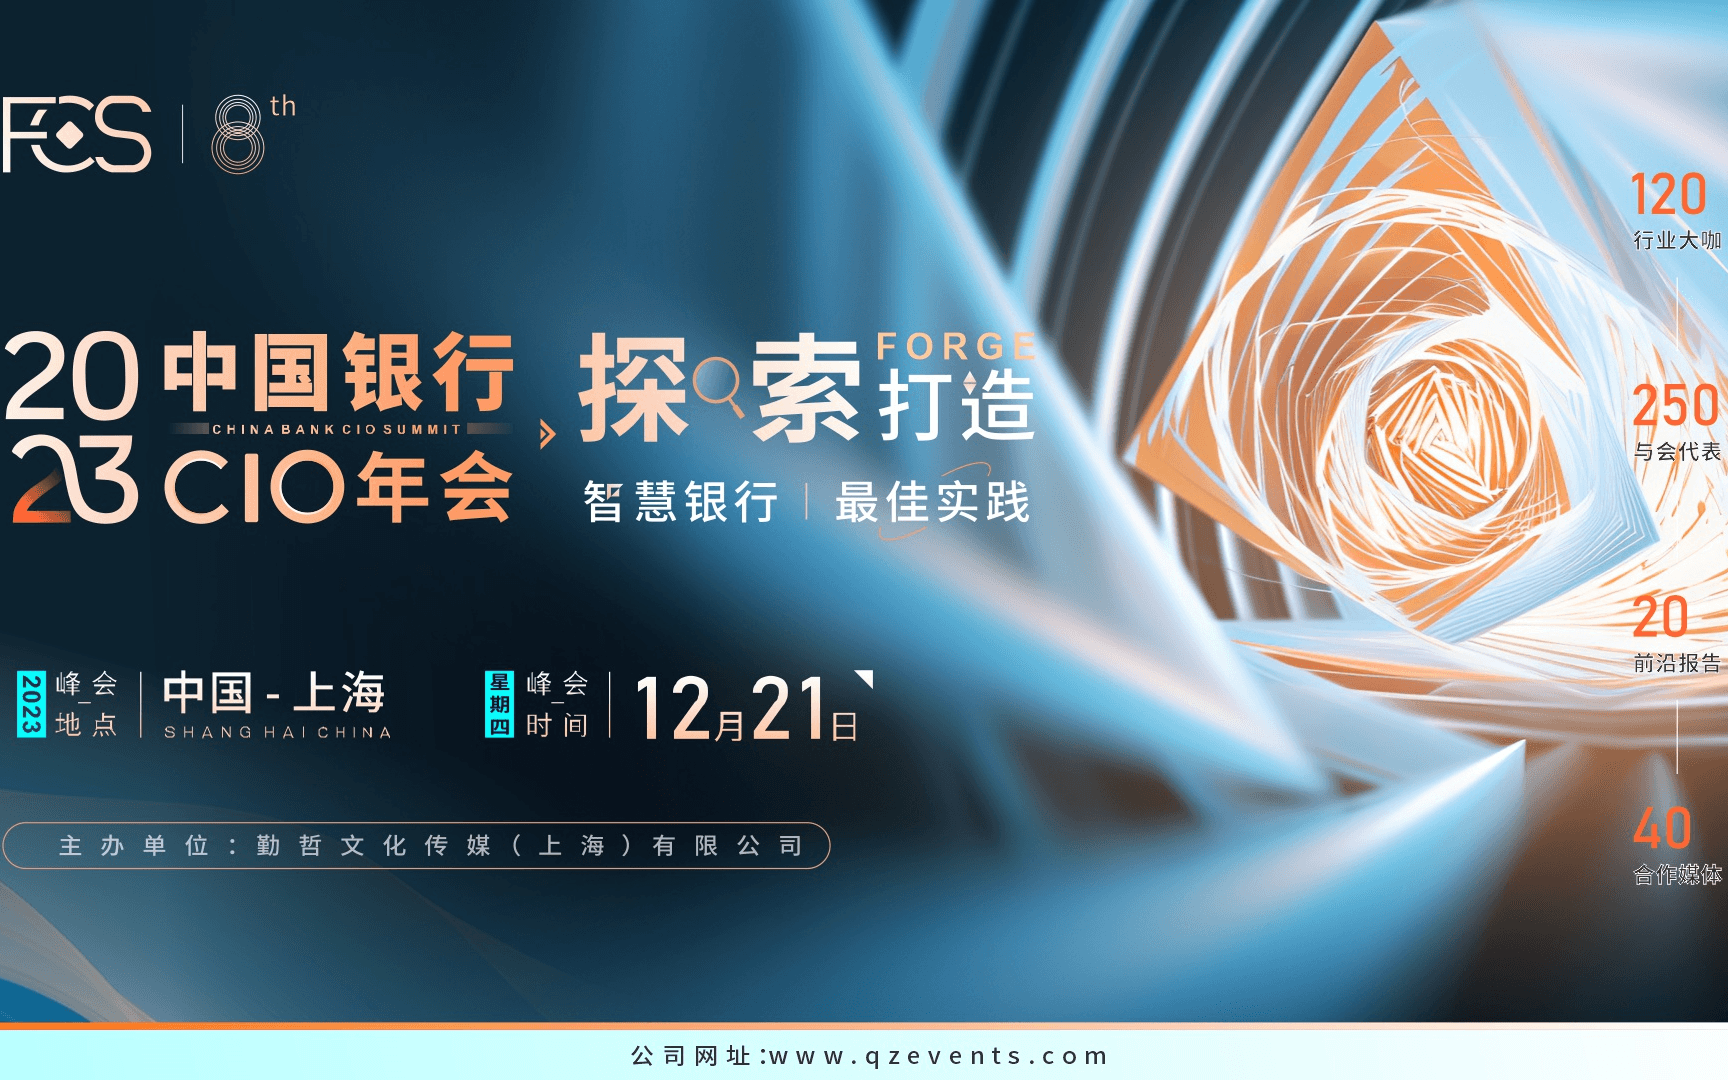 FCS 2023第十届中国银行CIO峰会